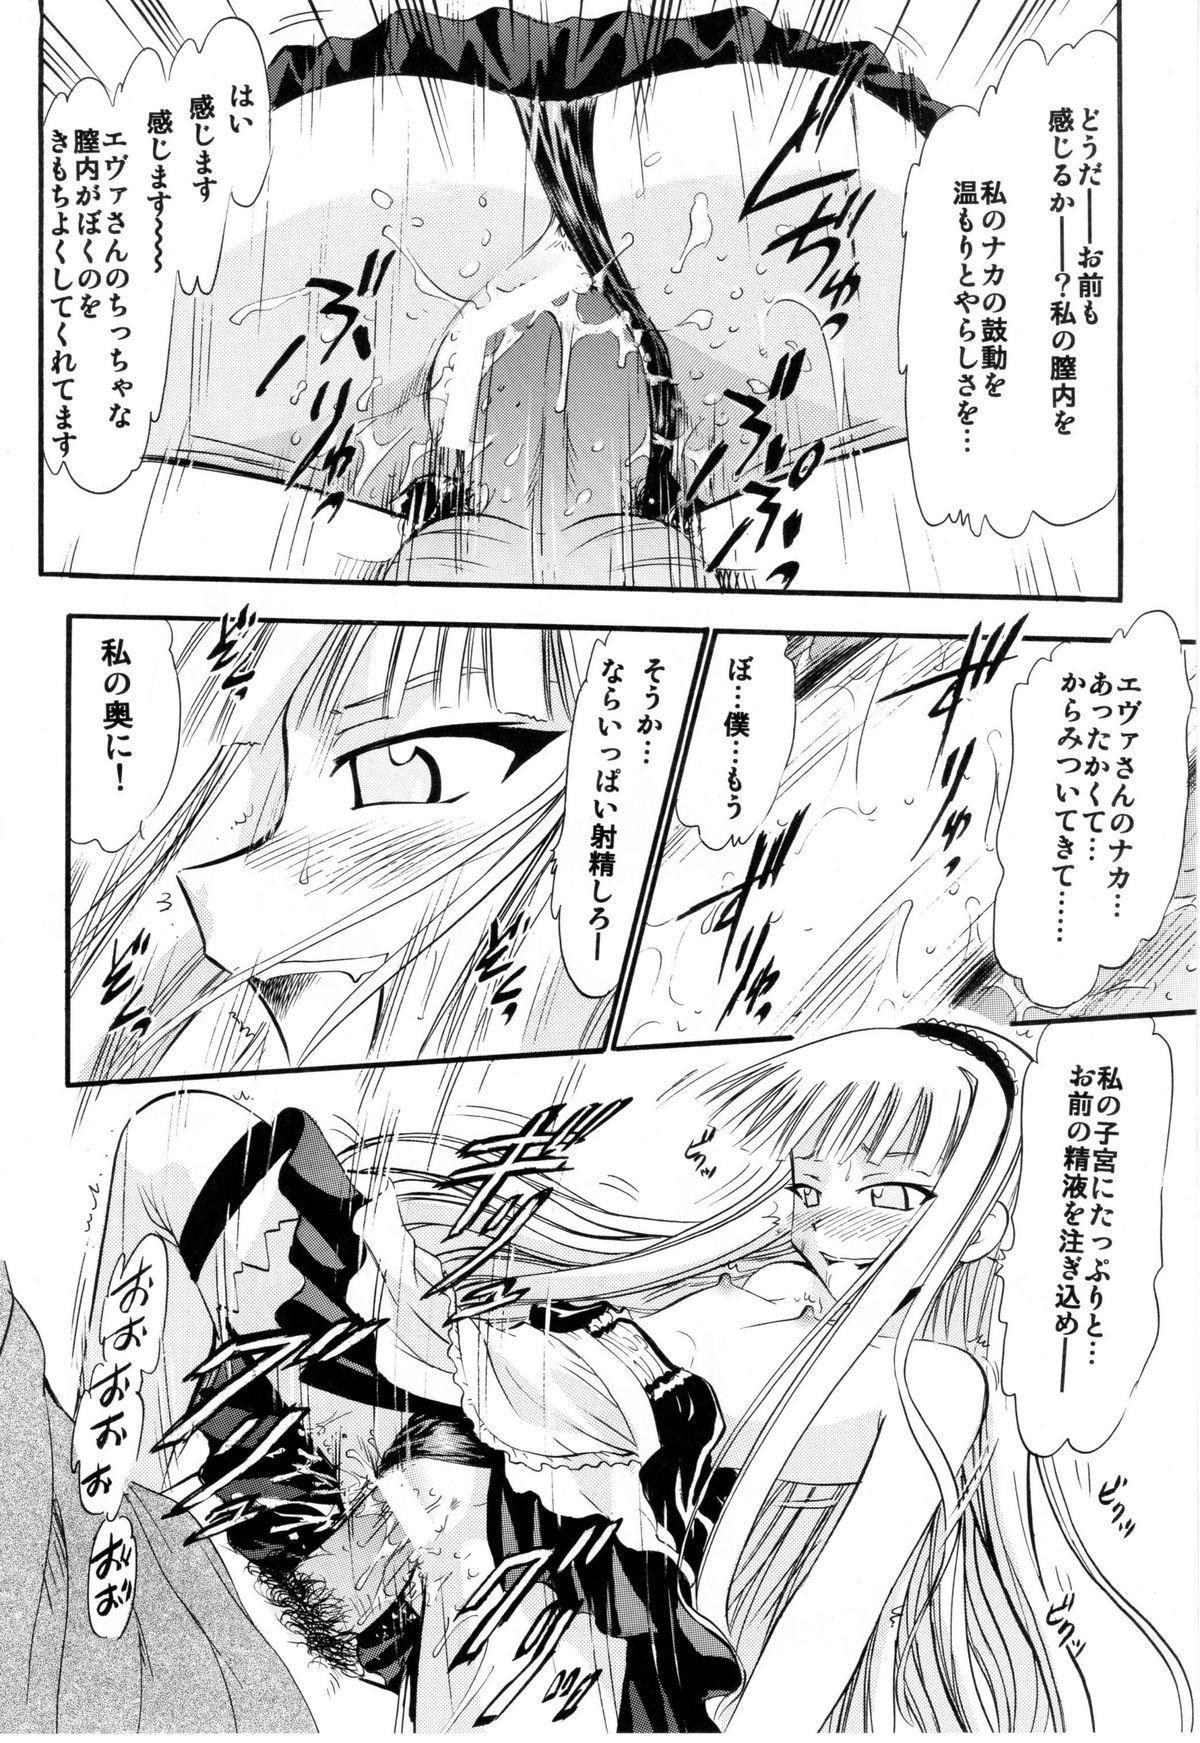 Puba Evangeline no Himitsu Arbeit - Mahou sensei negima Ass Licking - Page 11